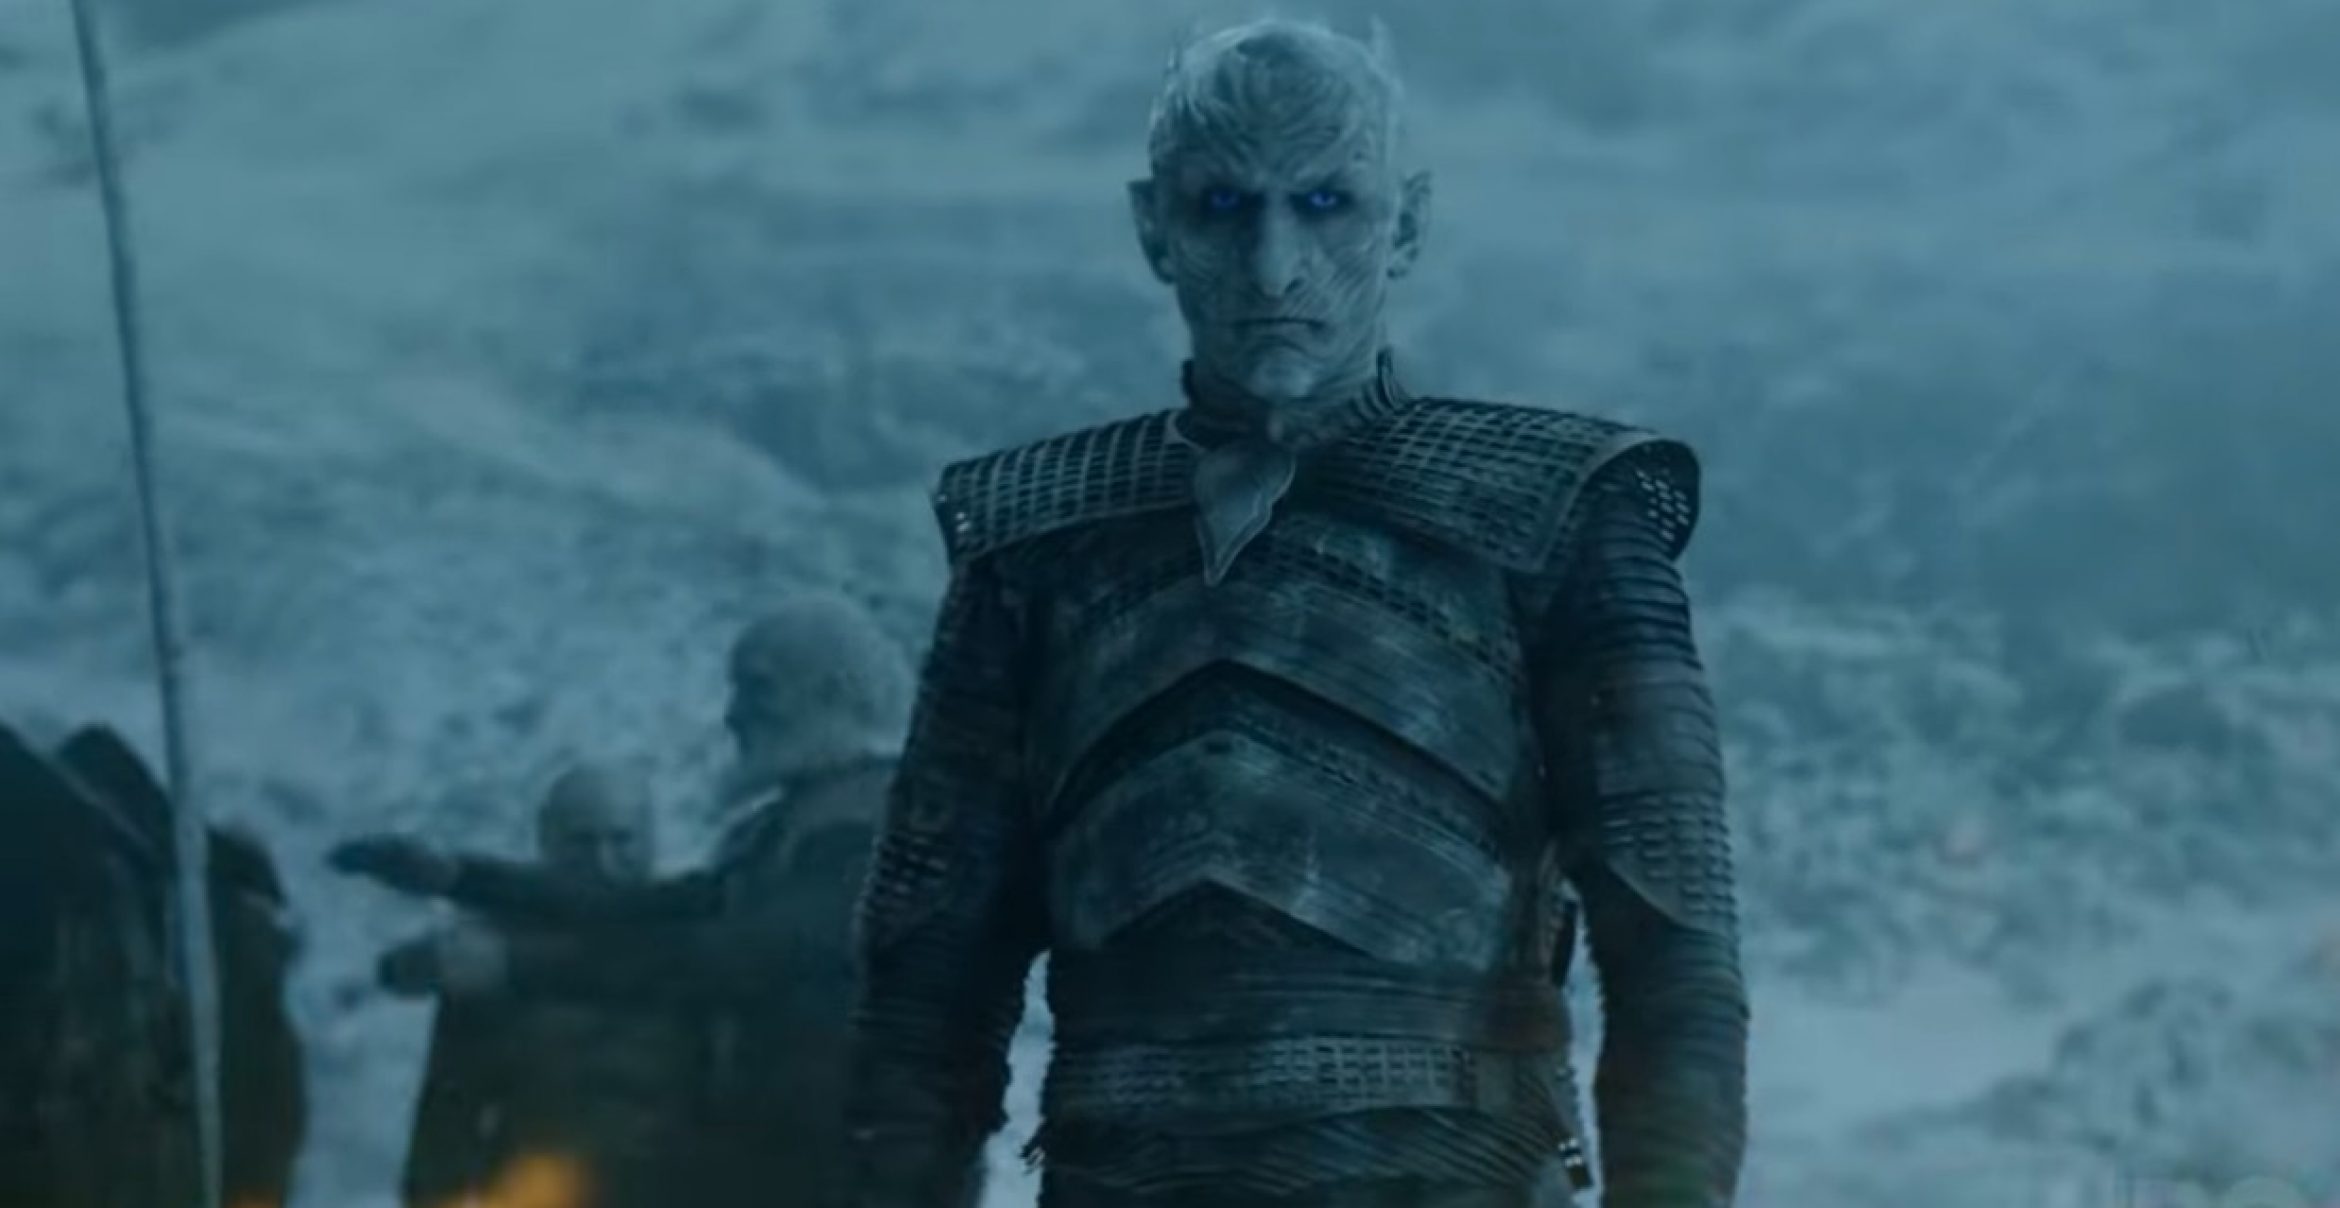 HBO droppt ersten “Game of Thrones“-Trailer zur finalen Staffel – mit Starttermin